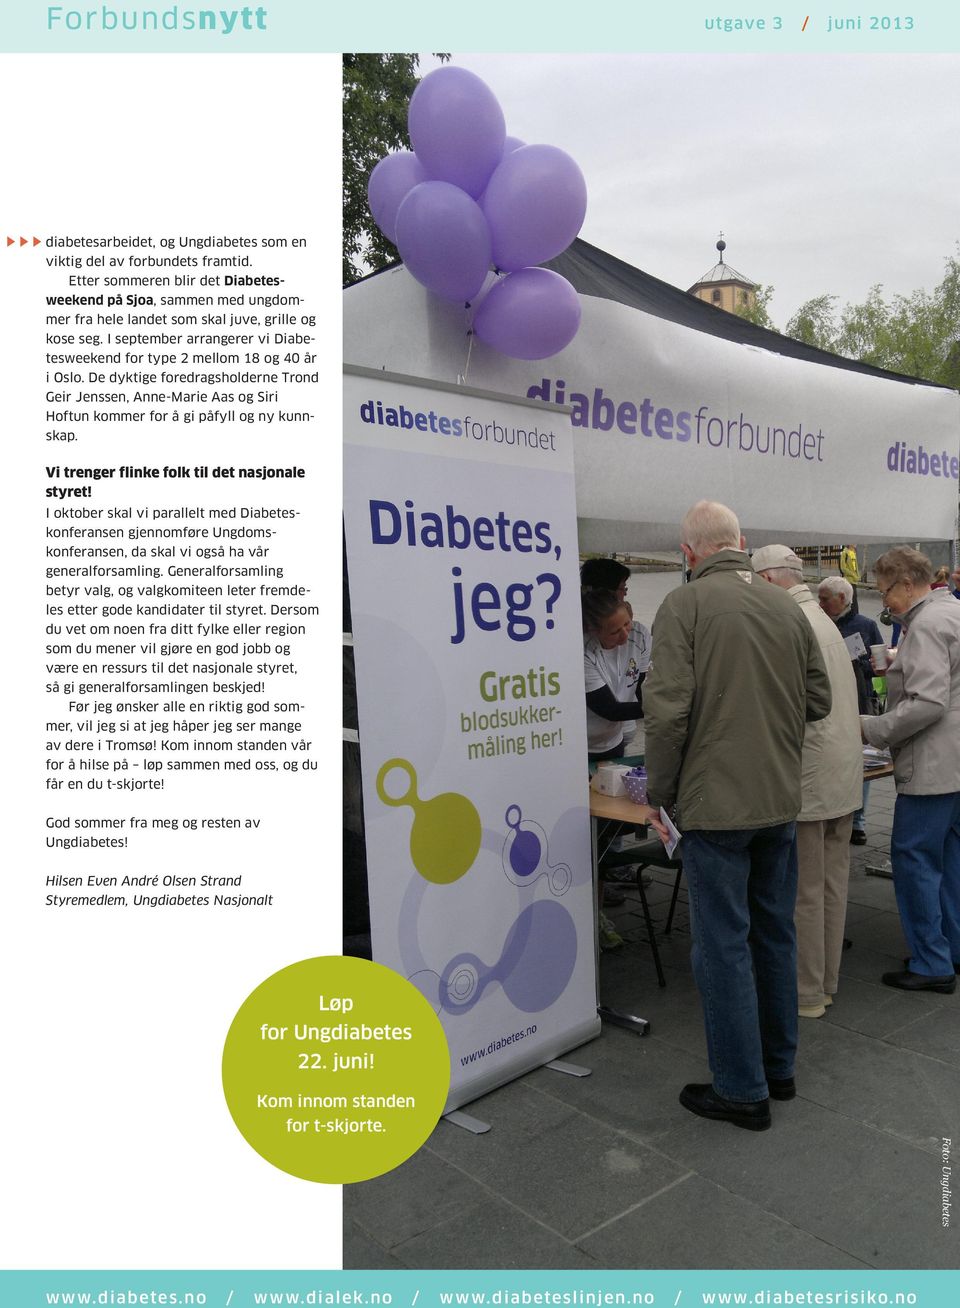 I september arrangerer vi Diabetesweekend for type 2 mellom 18 og 40 år i Oslo. De dyktige foredragsholderne Trond Geir Jenssen, Anne-Marie Aas og Siri Hoftun kommer for å gi påfyll og ny kunnskap.